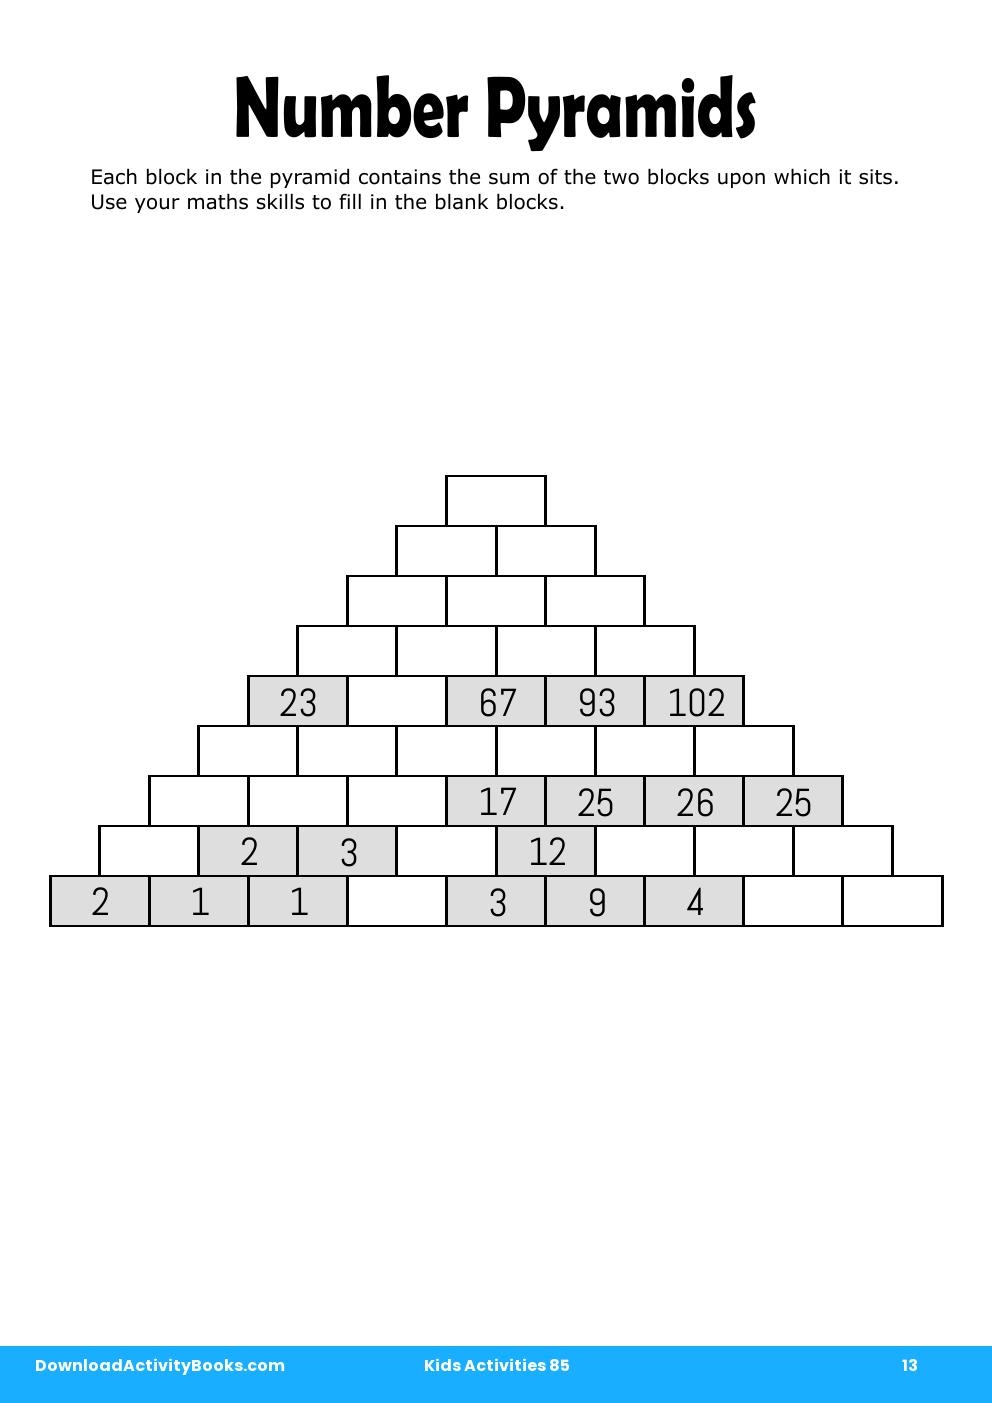 Number Pyramids in Kids Activities 85